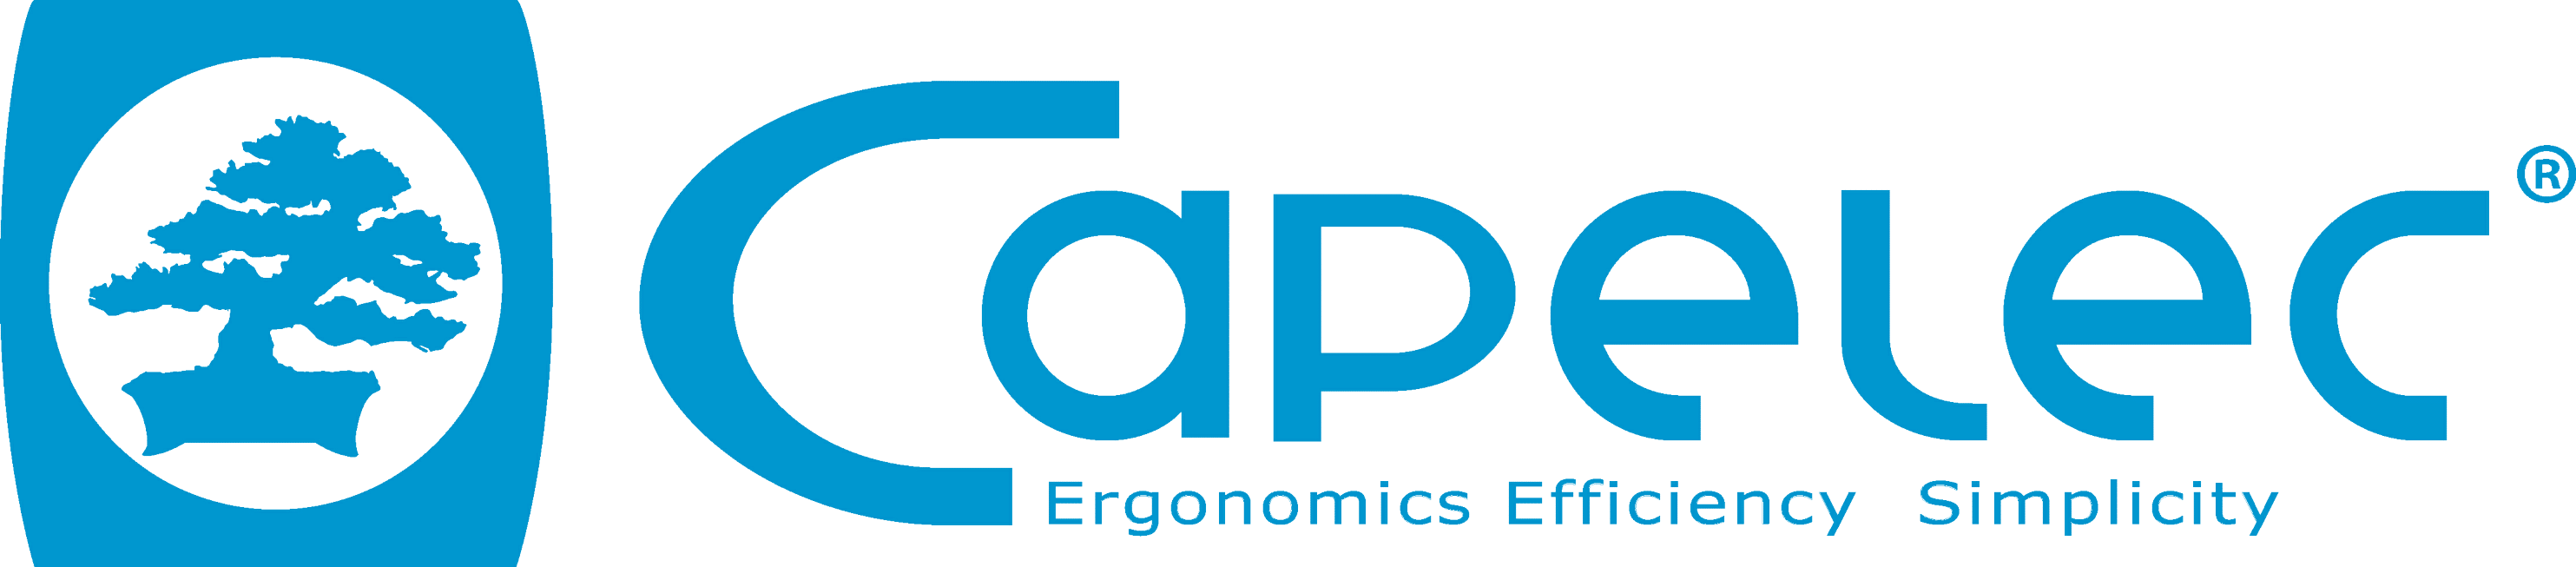 Capelec logo